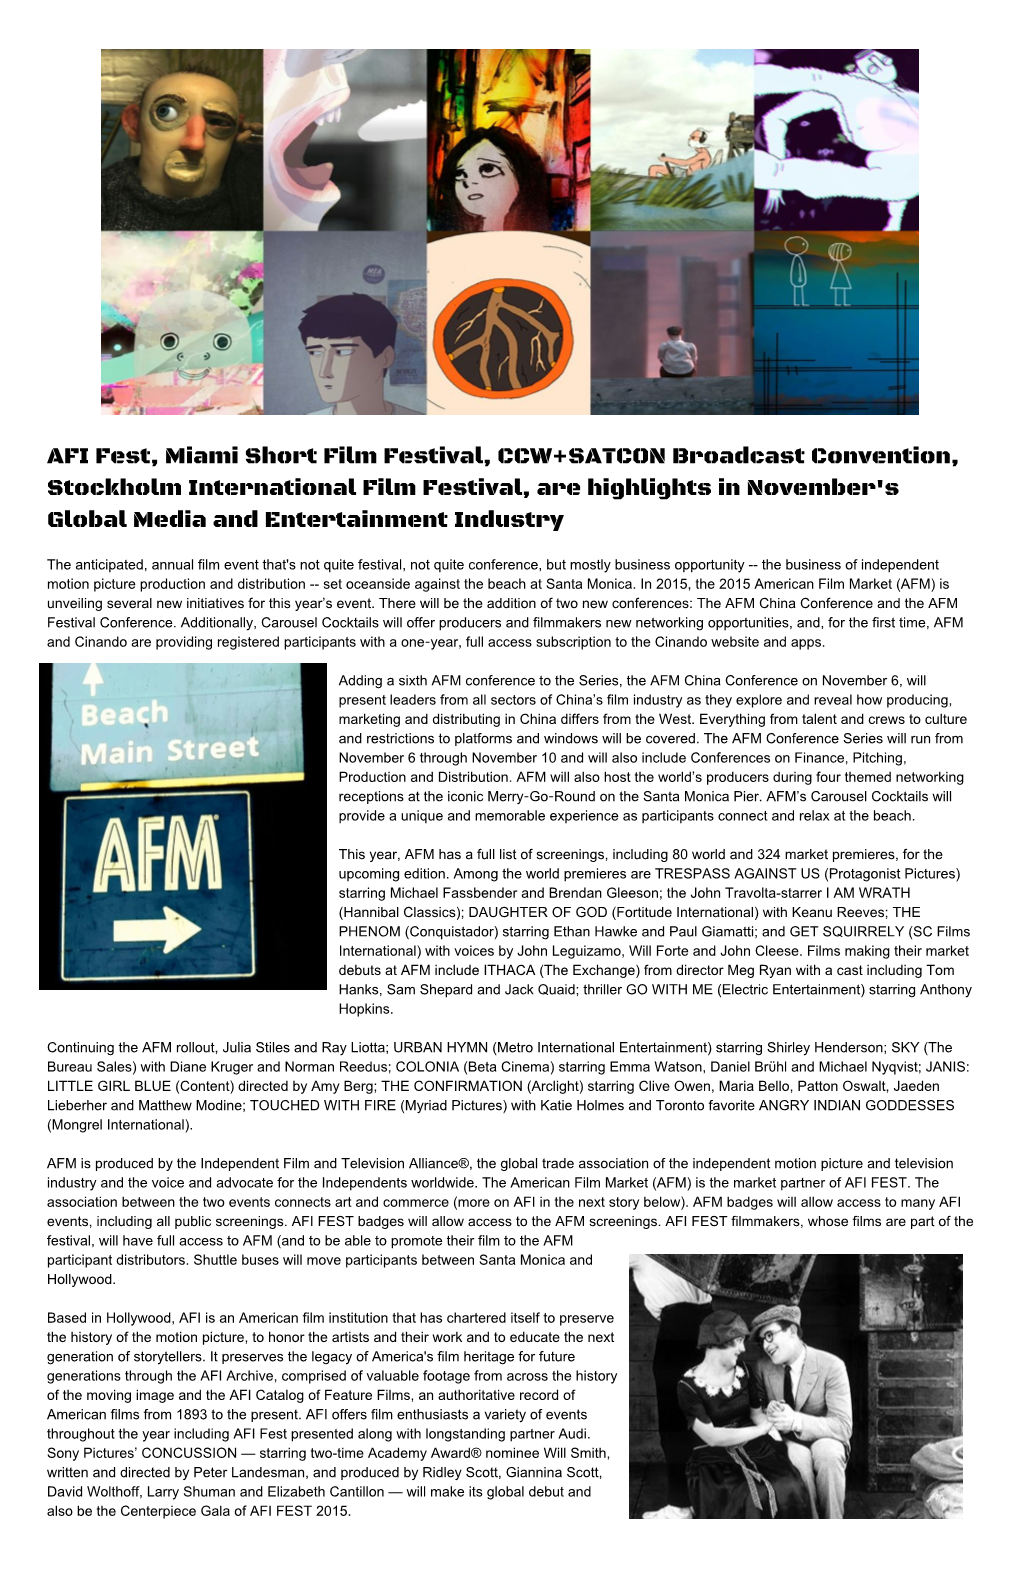 AFI Fest, Miami Short Film Festival, CCW+SATCON Broadcast